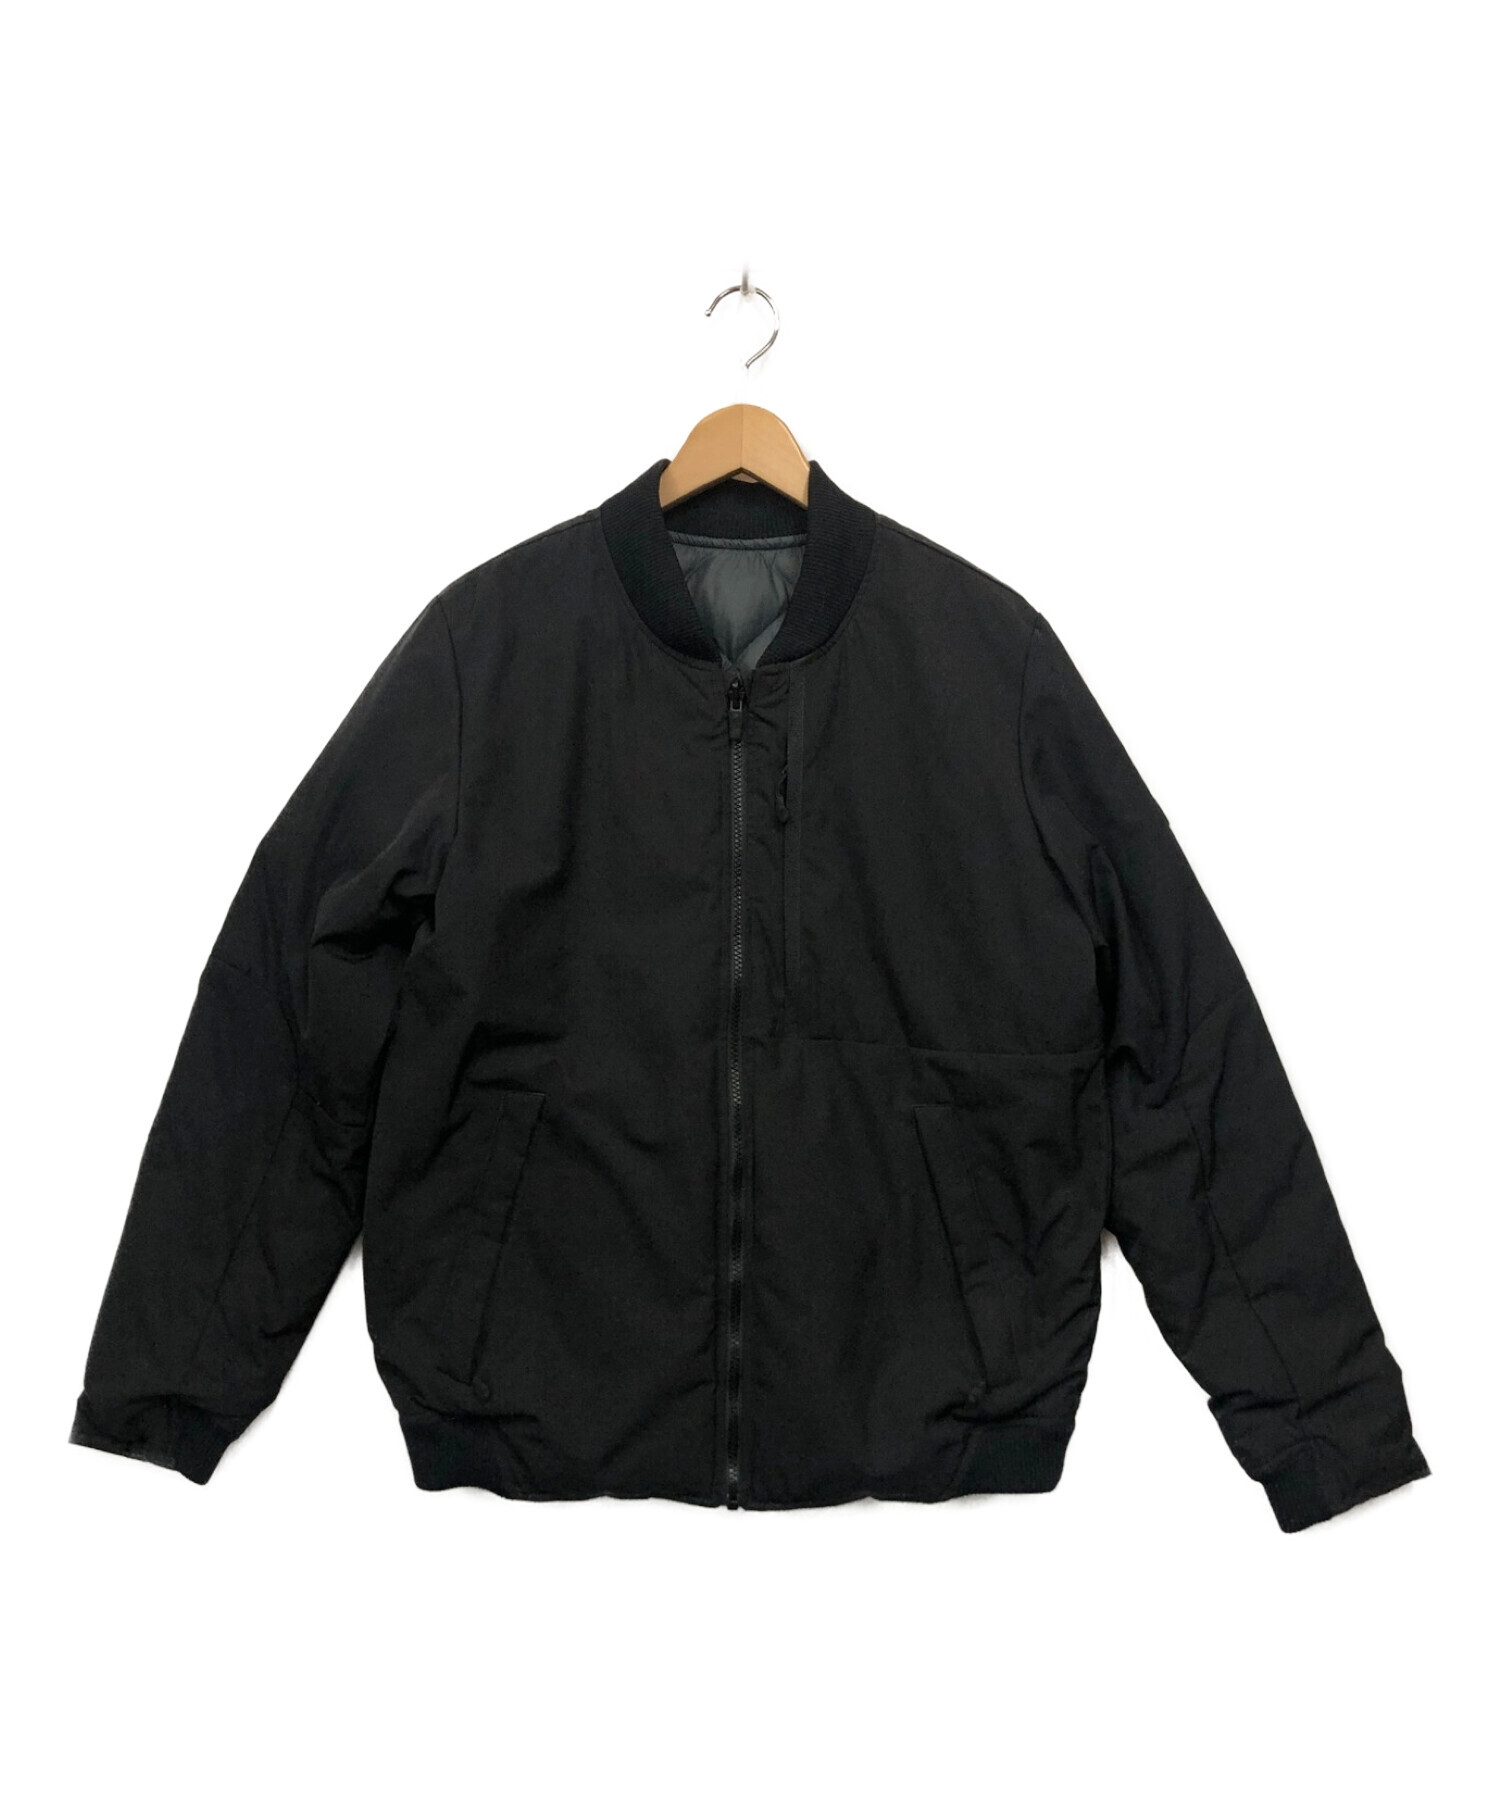 NIKE (ナイキ) リバーシブルダウンジャケット ブラック サイズ:L